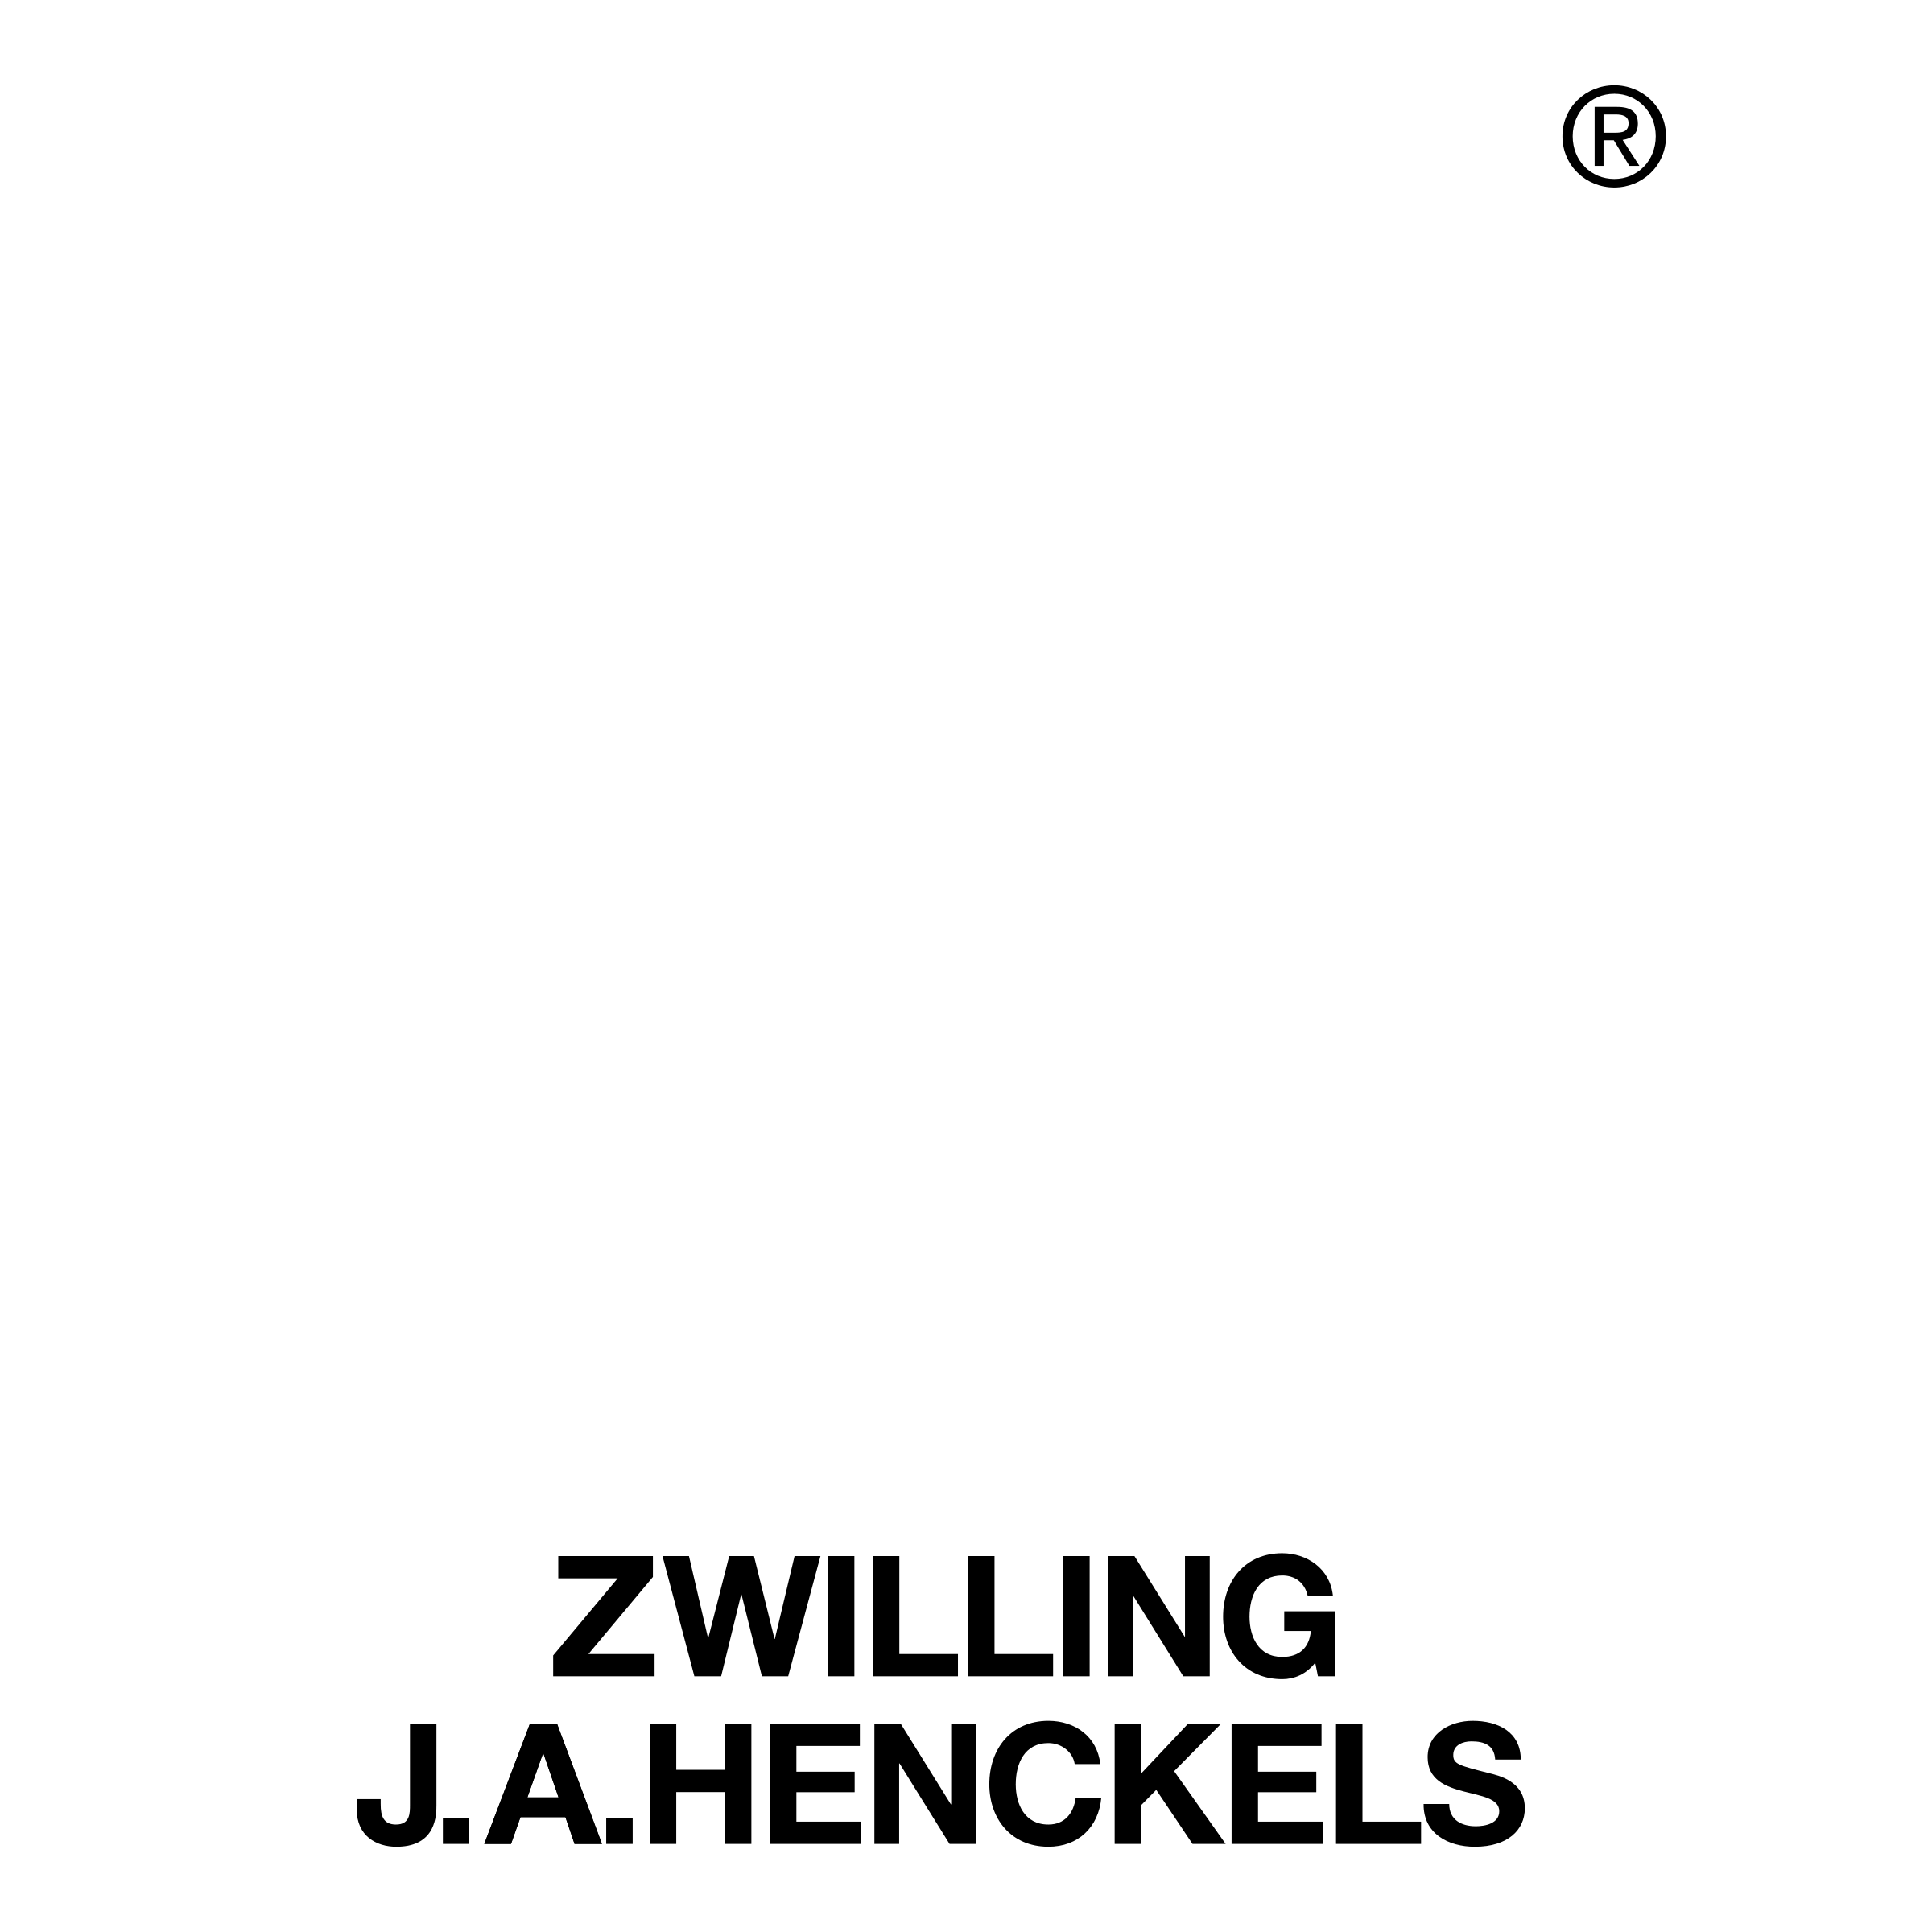 Henckels Logo - Zwilling J A Henckels Logo PNG Transparent & SVG Vector